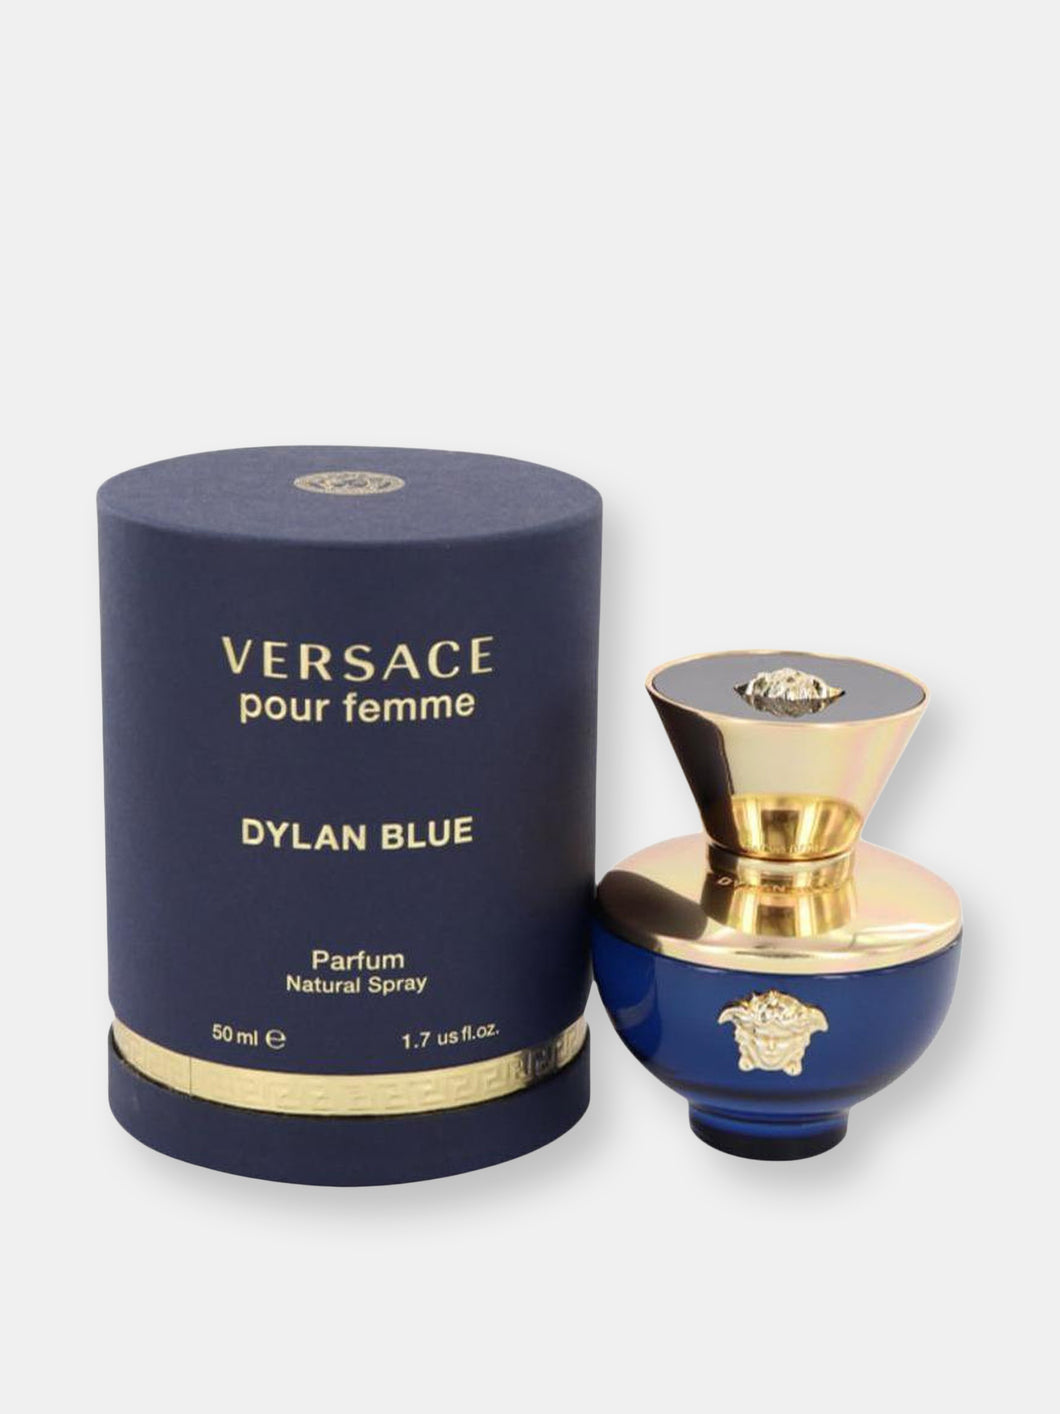 Versace Pour Femme Dylan Blue by Versace Eau De Parfum Spray 1.7 oz